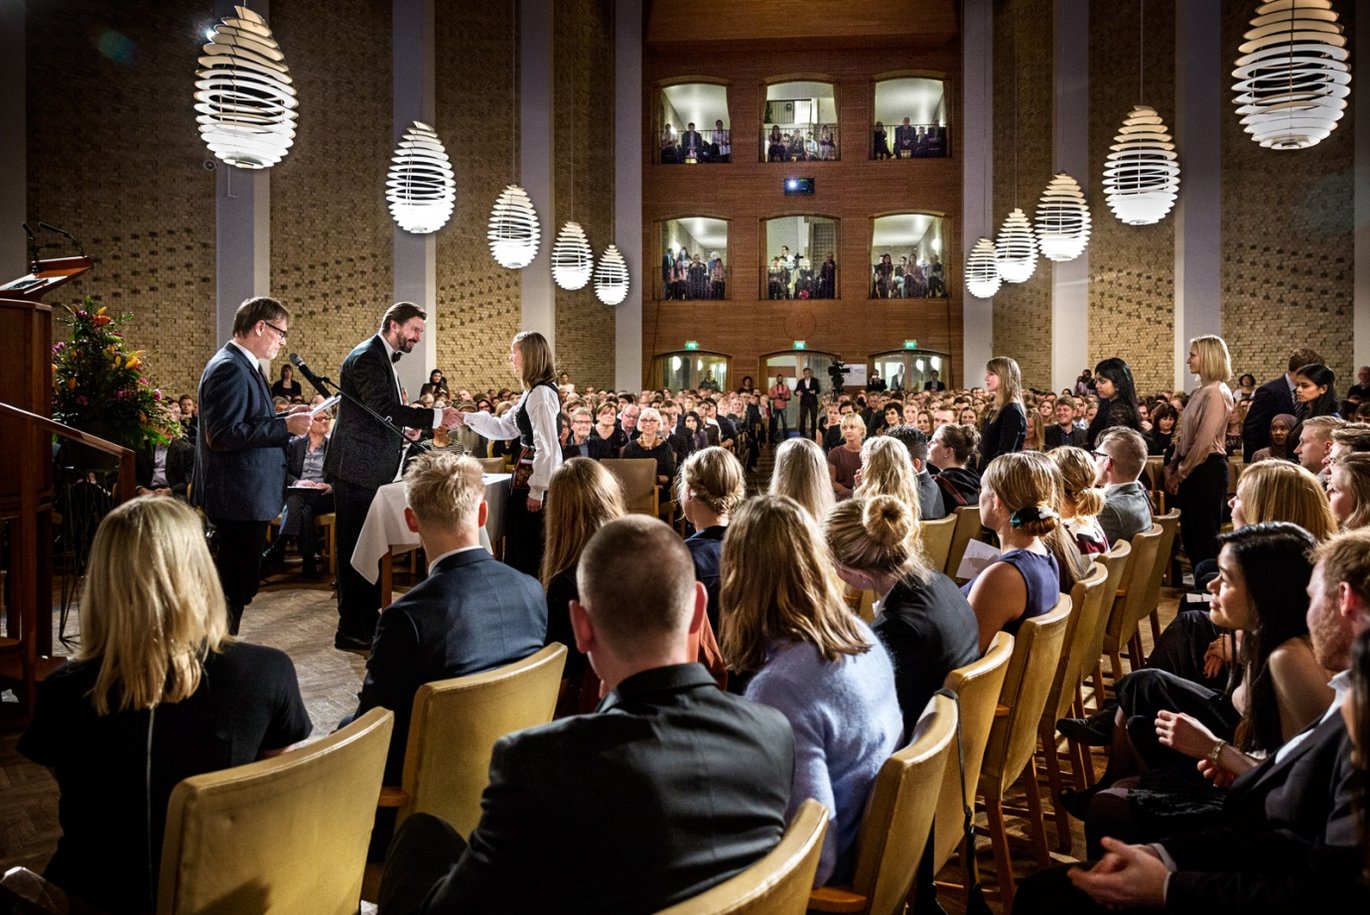 155 nye læger aflagde det traditionsrige lægeløfte ved kandidatafslutningen på medicin i Aulaen i fredags. Foto: Maria Randima Brauer Sørensen/AU.